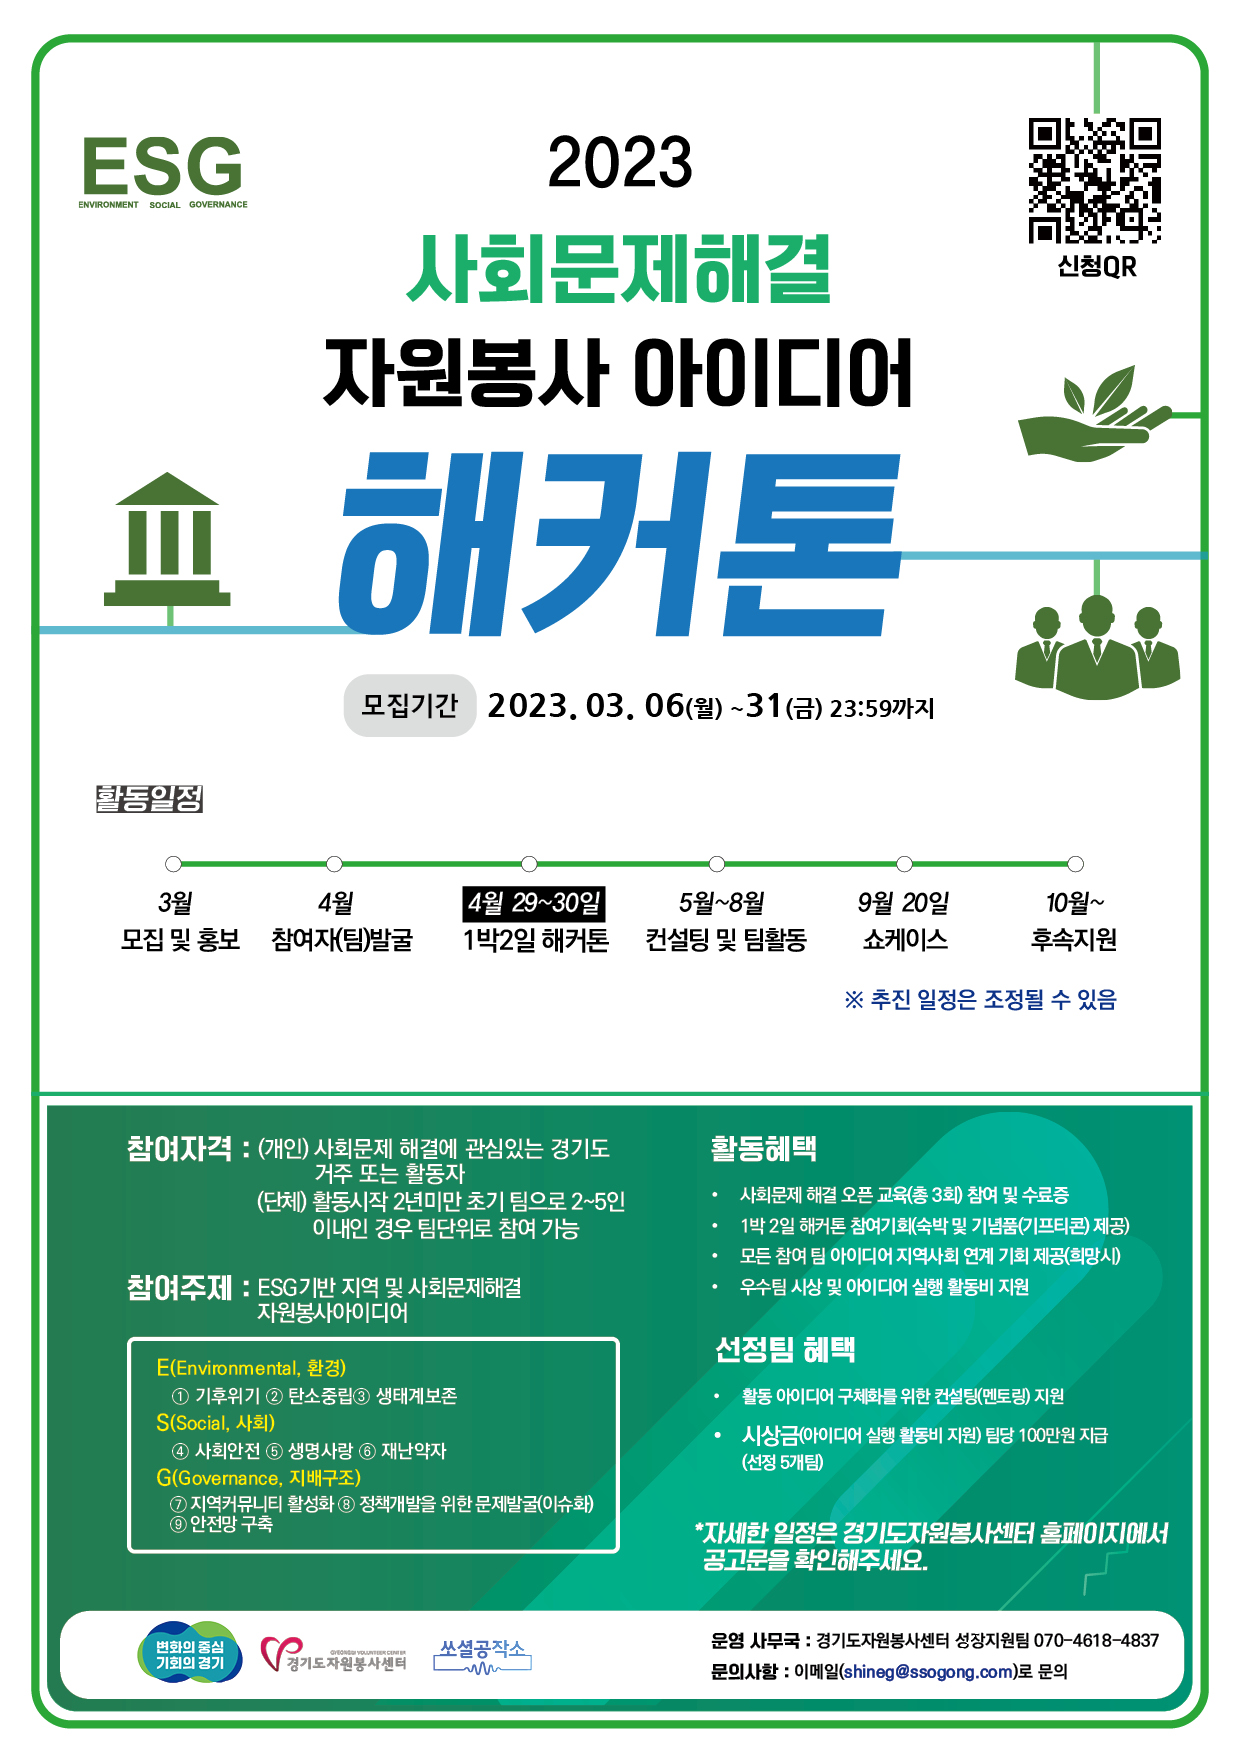 (경기도자원봉사센터)2023년 사회문제해결 자원봉사 아이디어 해커톤 대회 공모 포스터.jpg